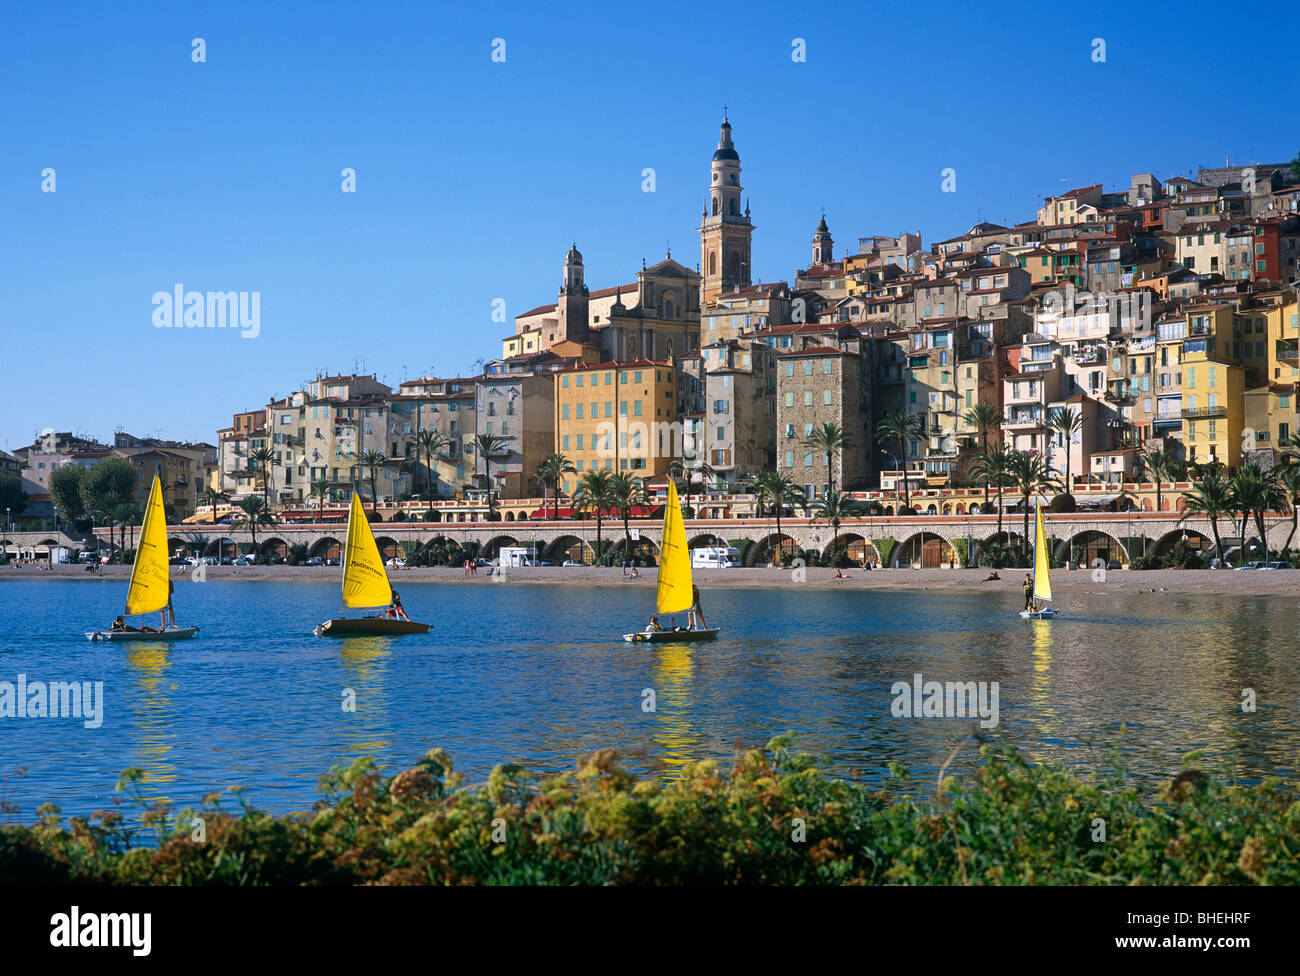 Vieille ville de Menton avec des bateaux à voile sur la journée d'été, la Côte D'azur, d'Azur, France, Europe Banque D'Images